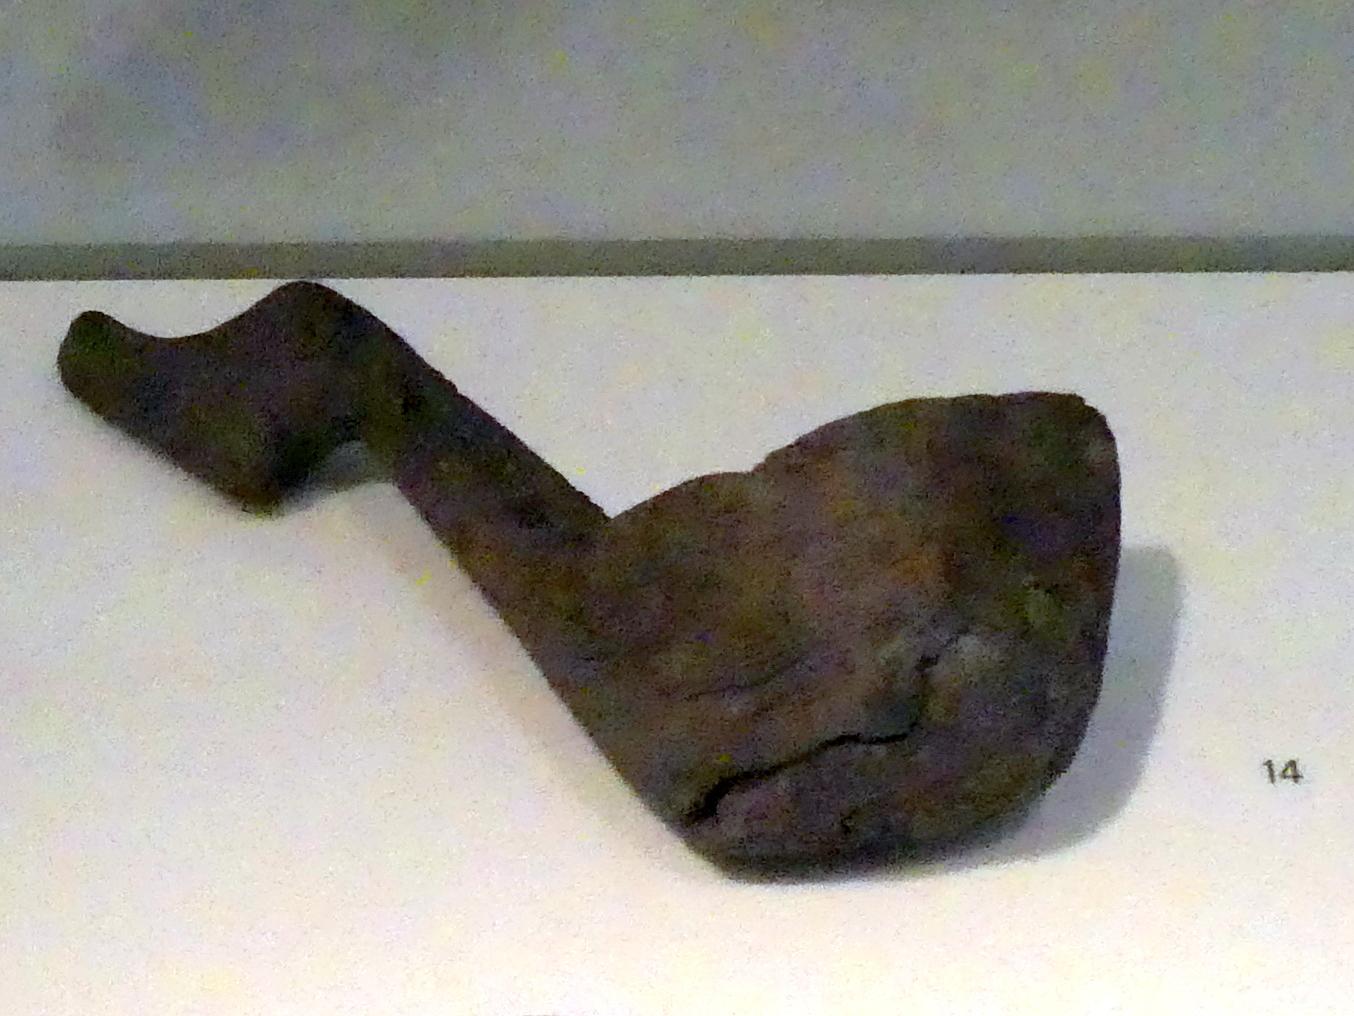 Schöpfkelle, Jungneolithikum, 4400 - 3500 v. Chr., Spätneolithikum, Undatiert, 4400 - 2800 v. Chr.